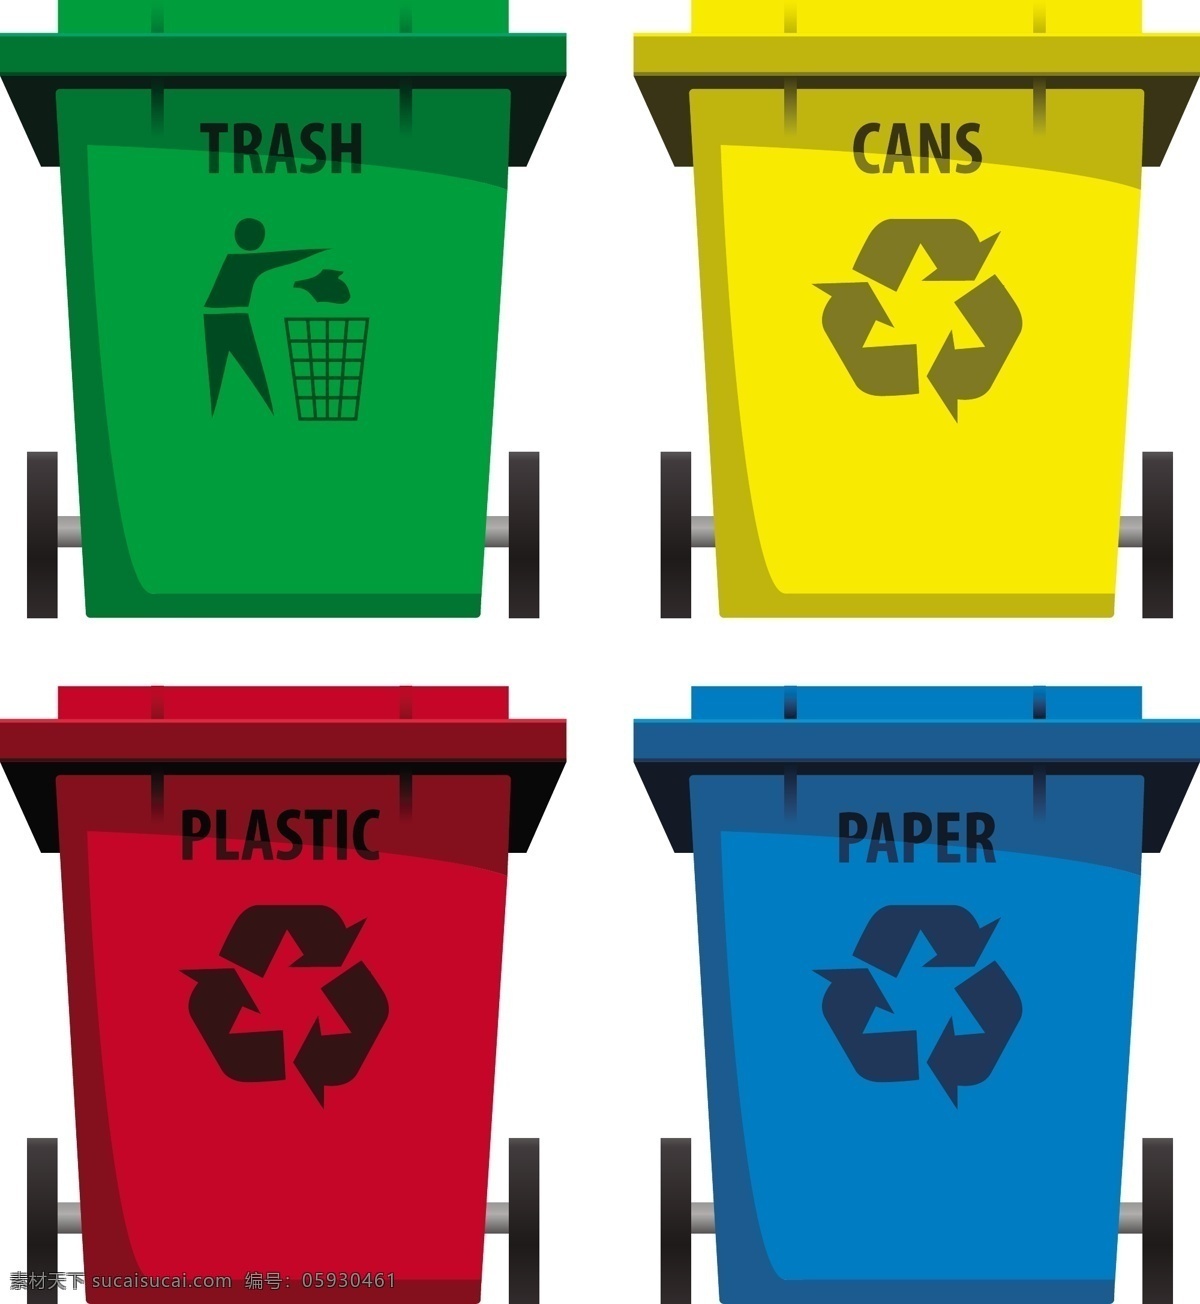 回收图标 丢垃圾图标 卡通垃圾桶 矢量垃圾桶 生活百科 矢量素材 白色